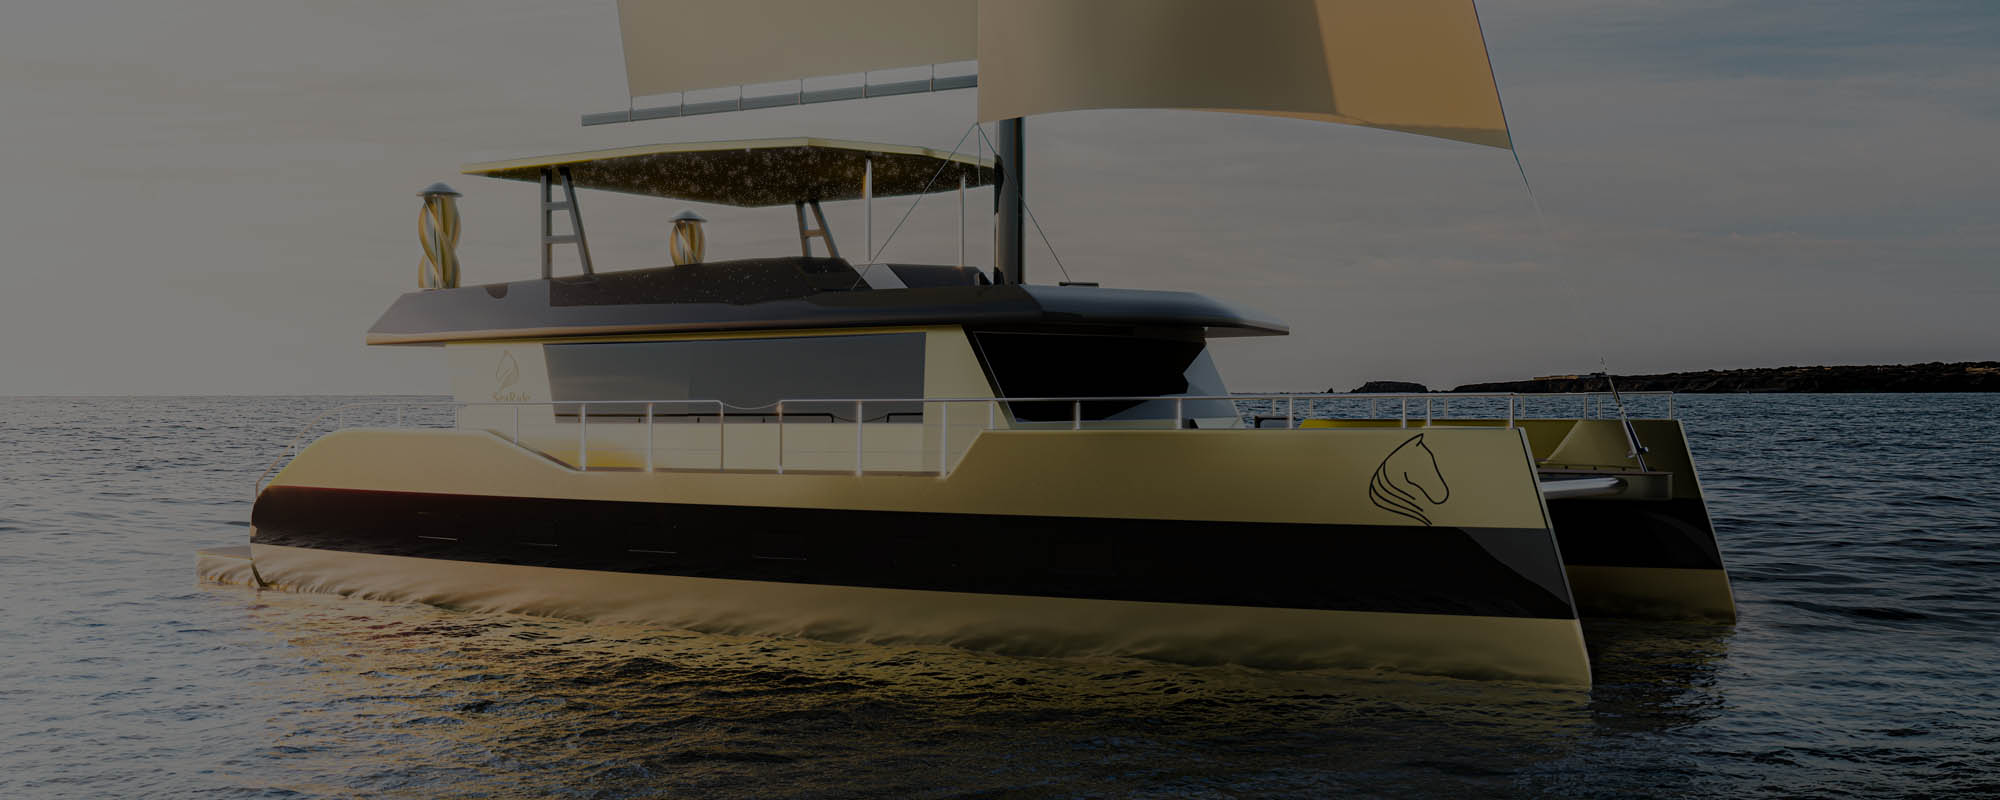 Vídeo con animación 3D y renders de un catamarán